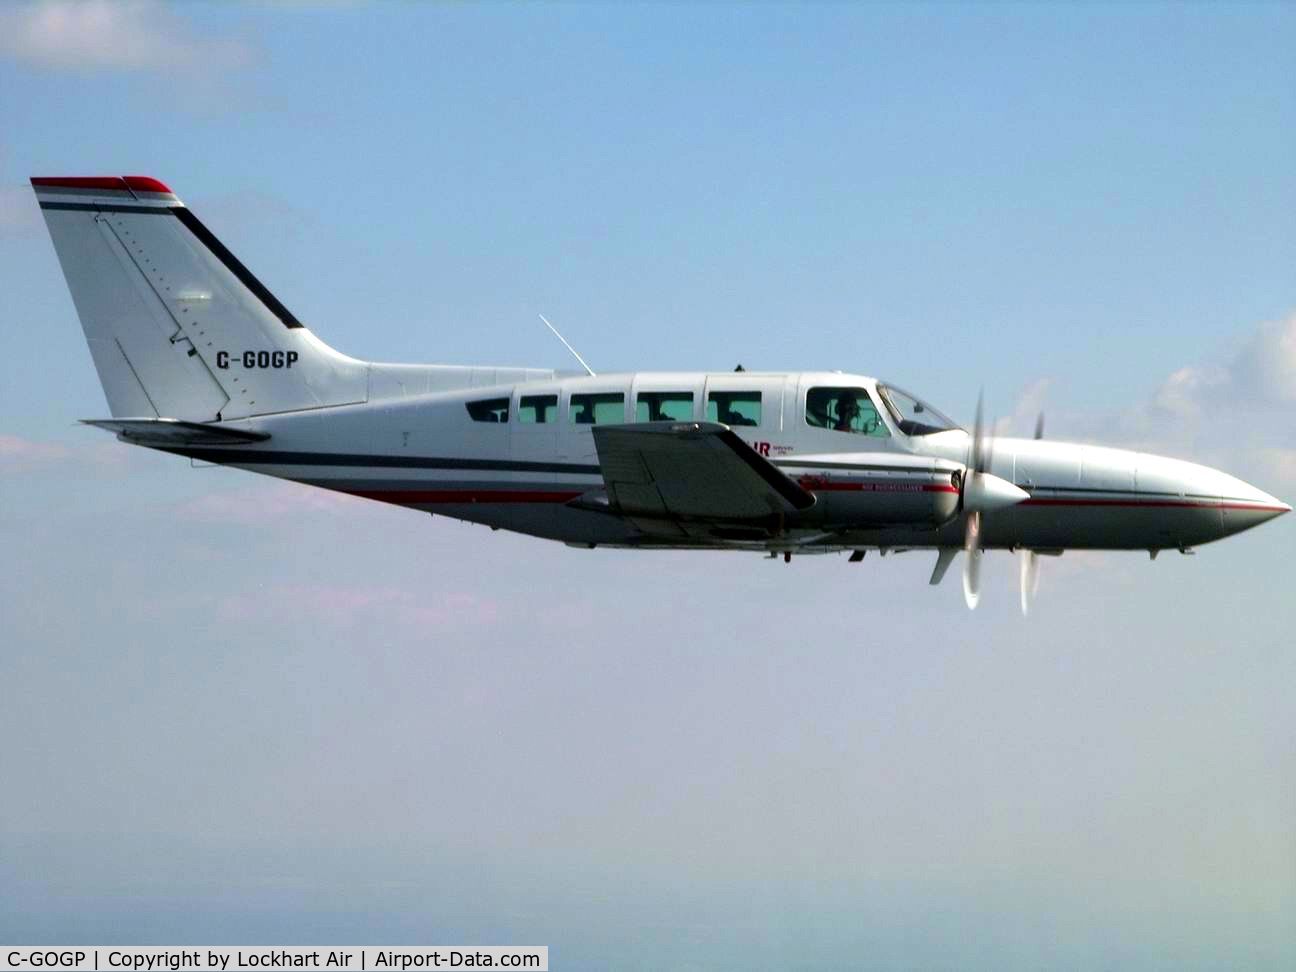 C-GOGP, 1981 Cessna 402C C/N 402C0516, GOGP in flight